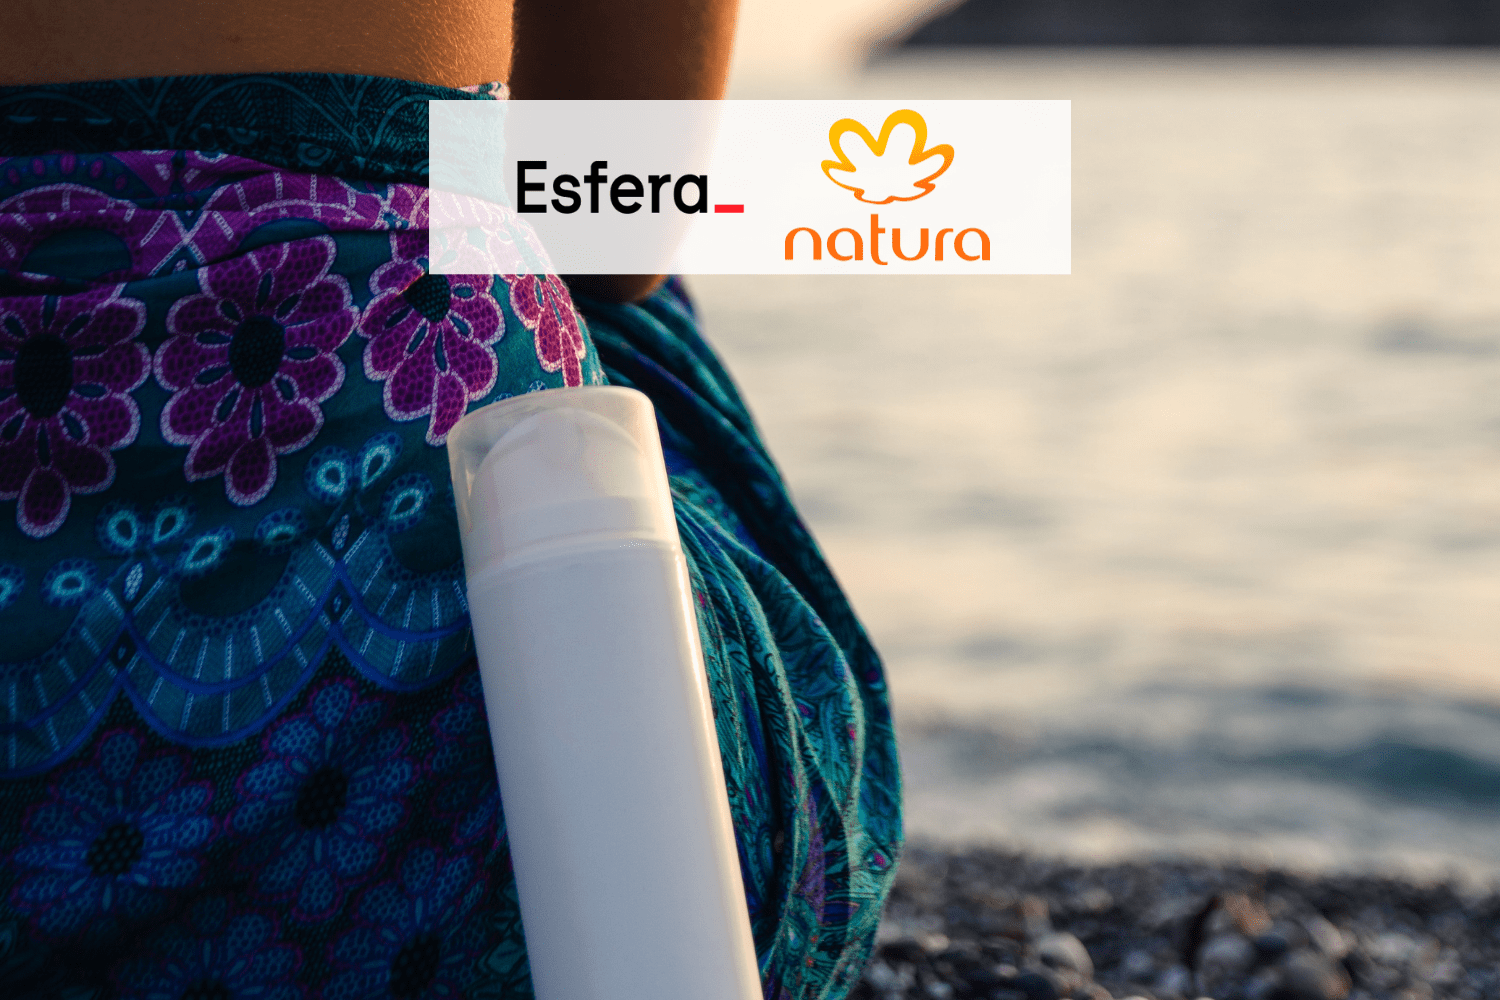 produto cosmético apoiado em uma pessoa na praia com logo Esfera e Natura 15 pontos Esfera